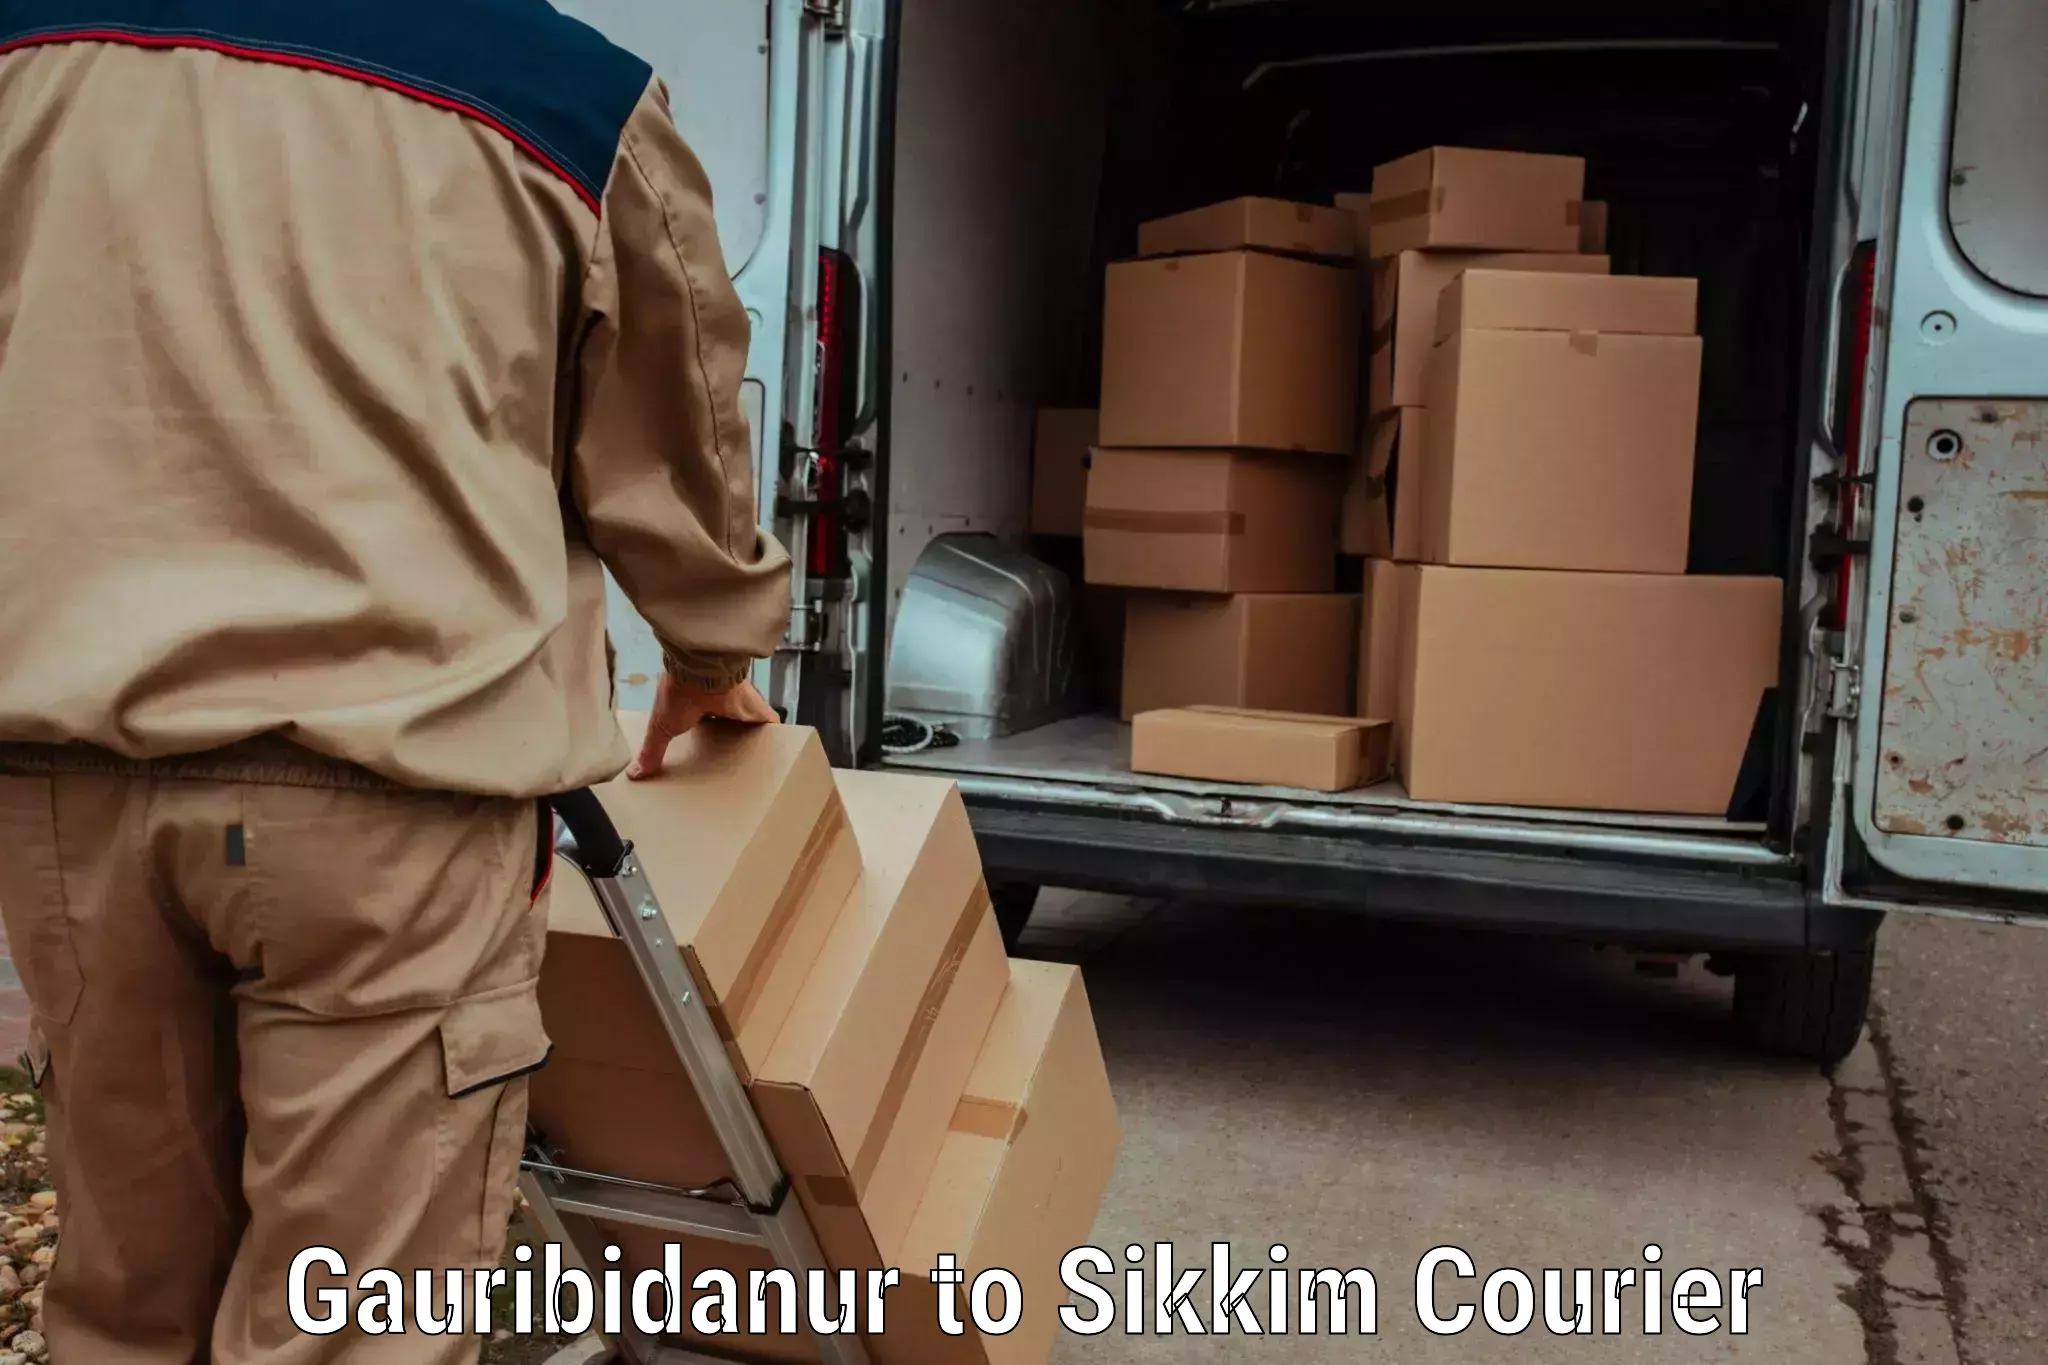 Next-day freight services Gauribidanur to North Sikkim